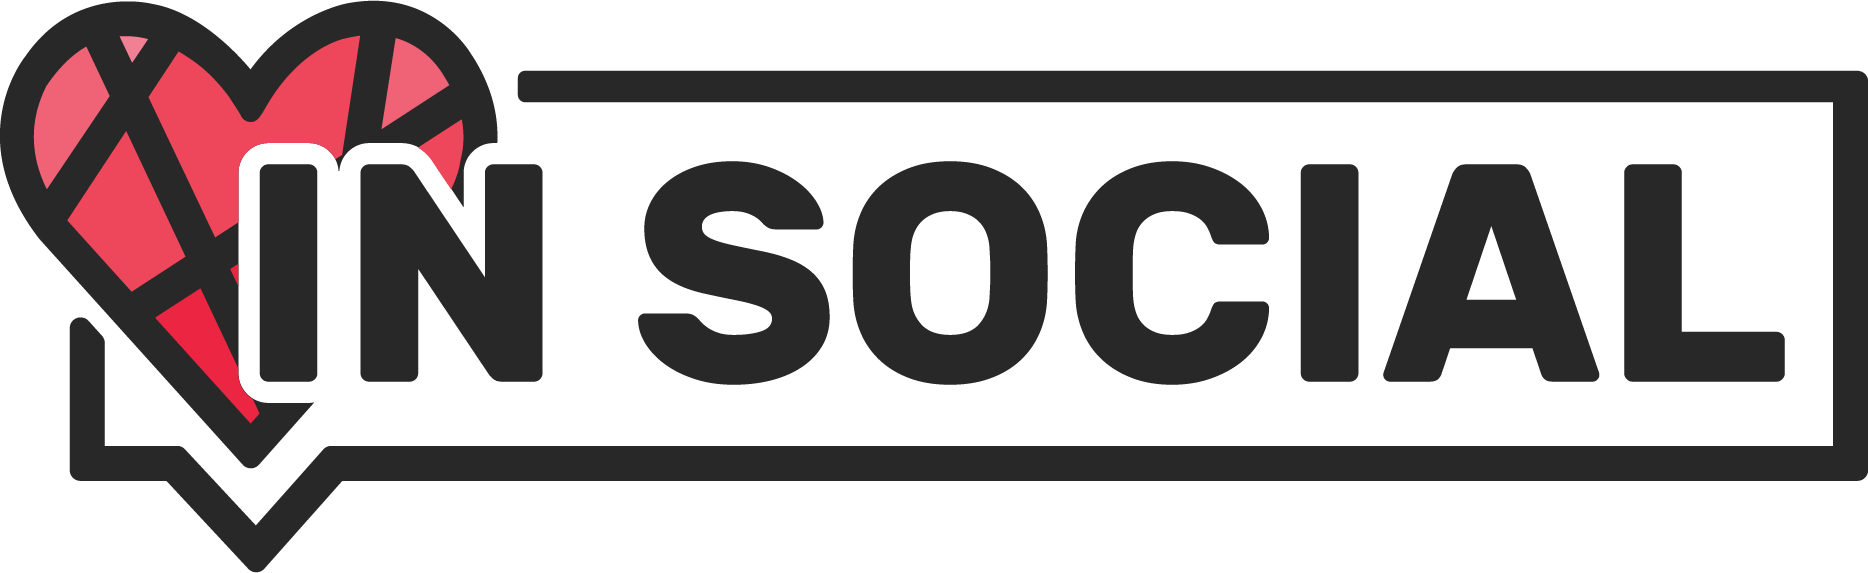 Partner logo for In Social